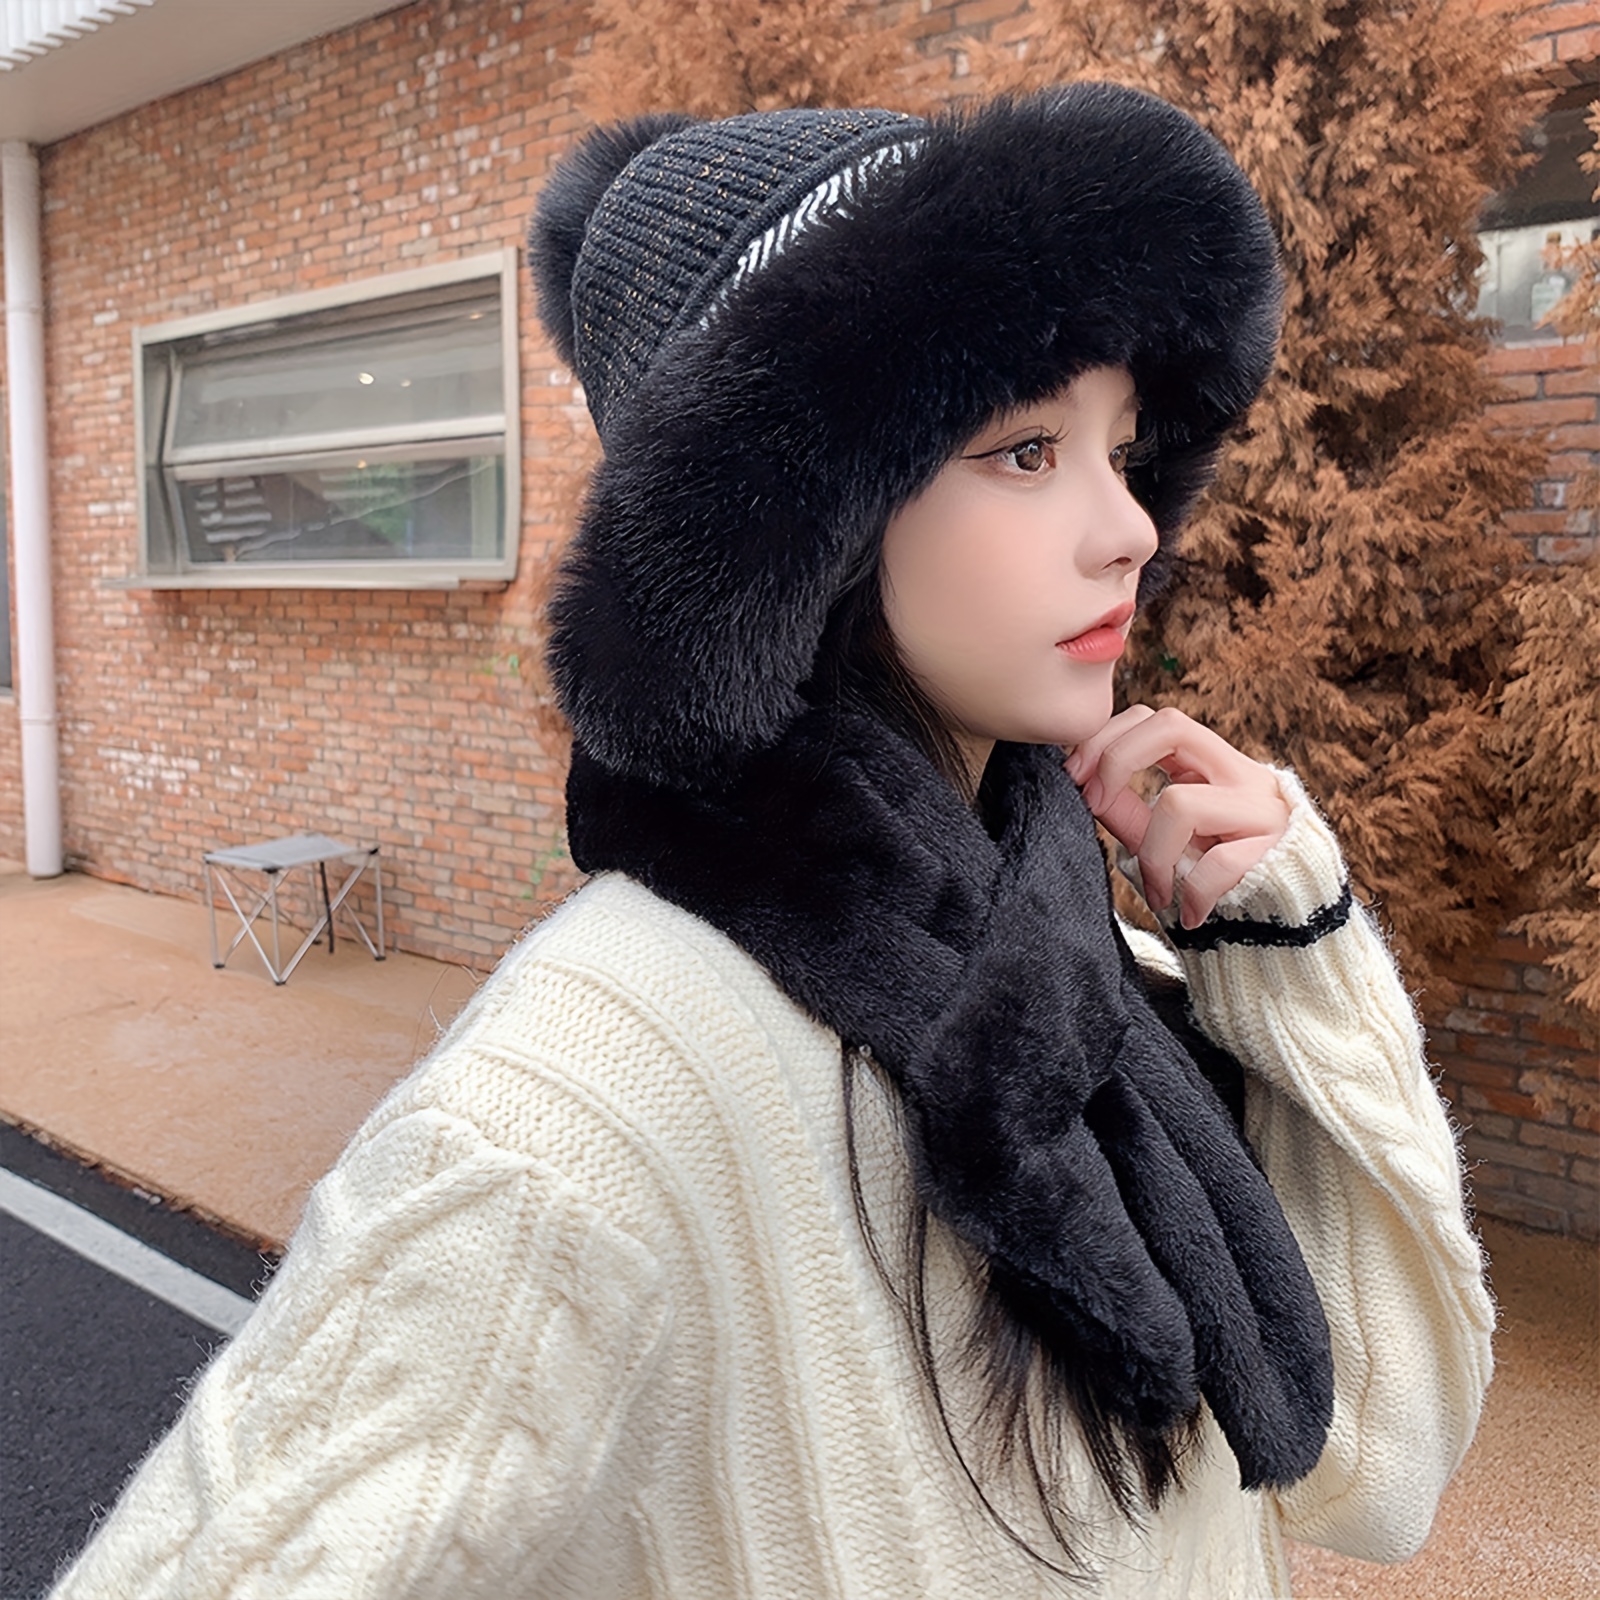 Solid Knit Faux Fur Pom Pom Beanie Hat Black